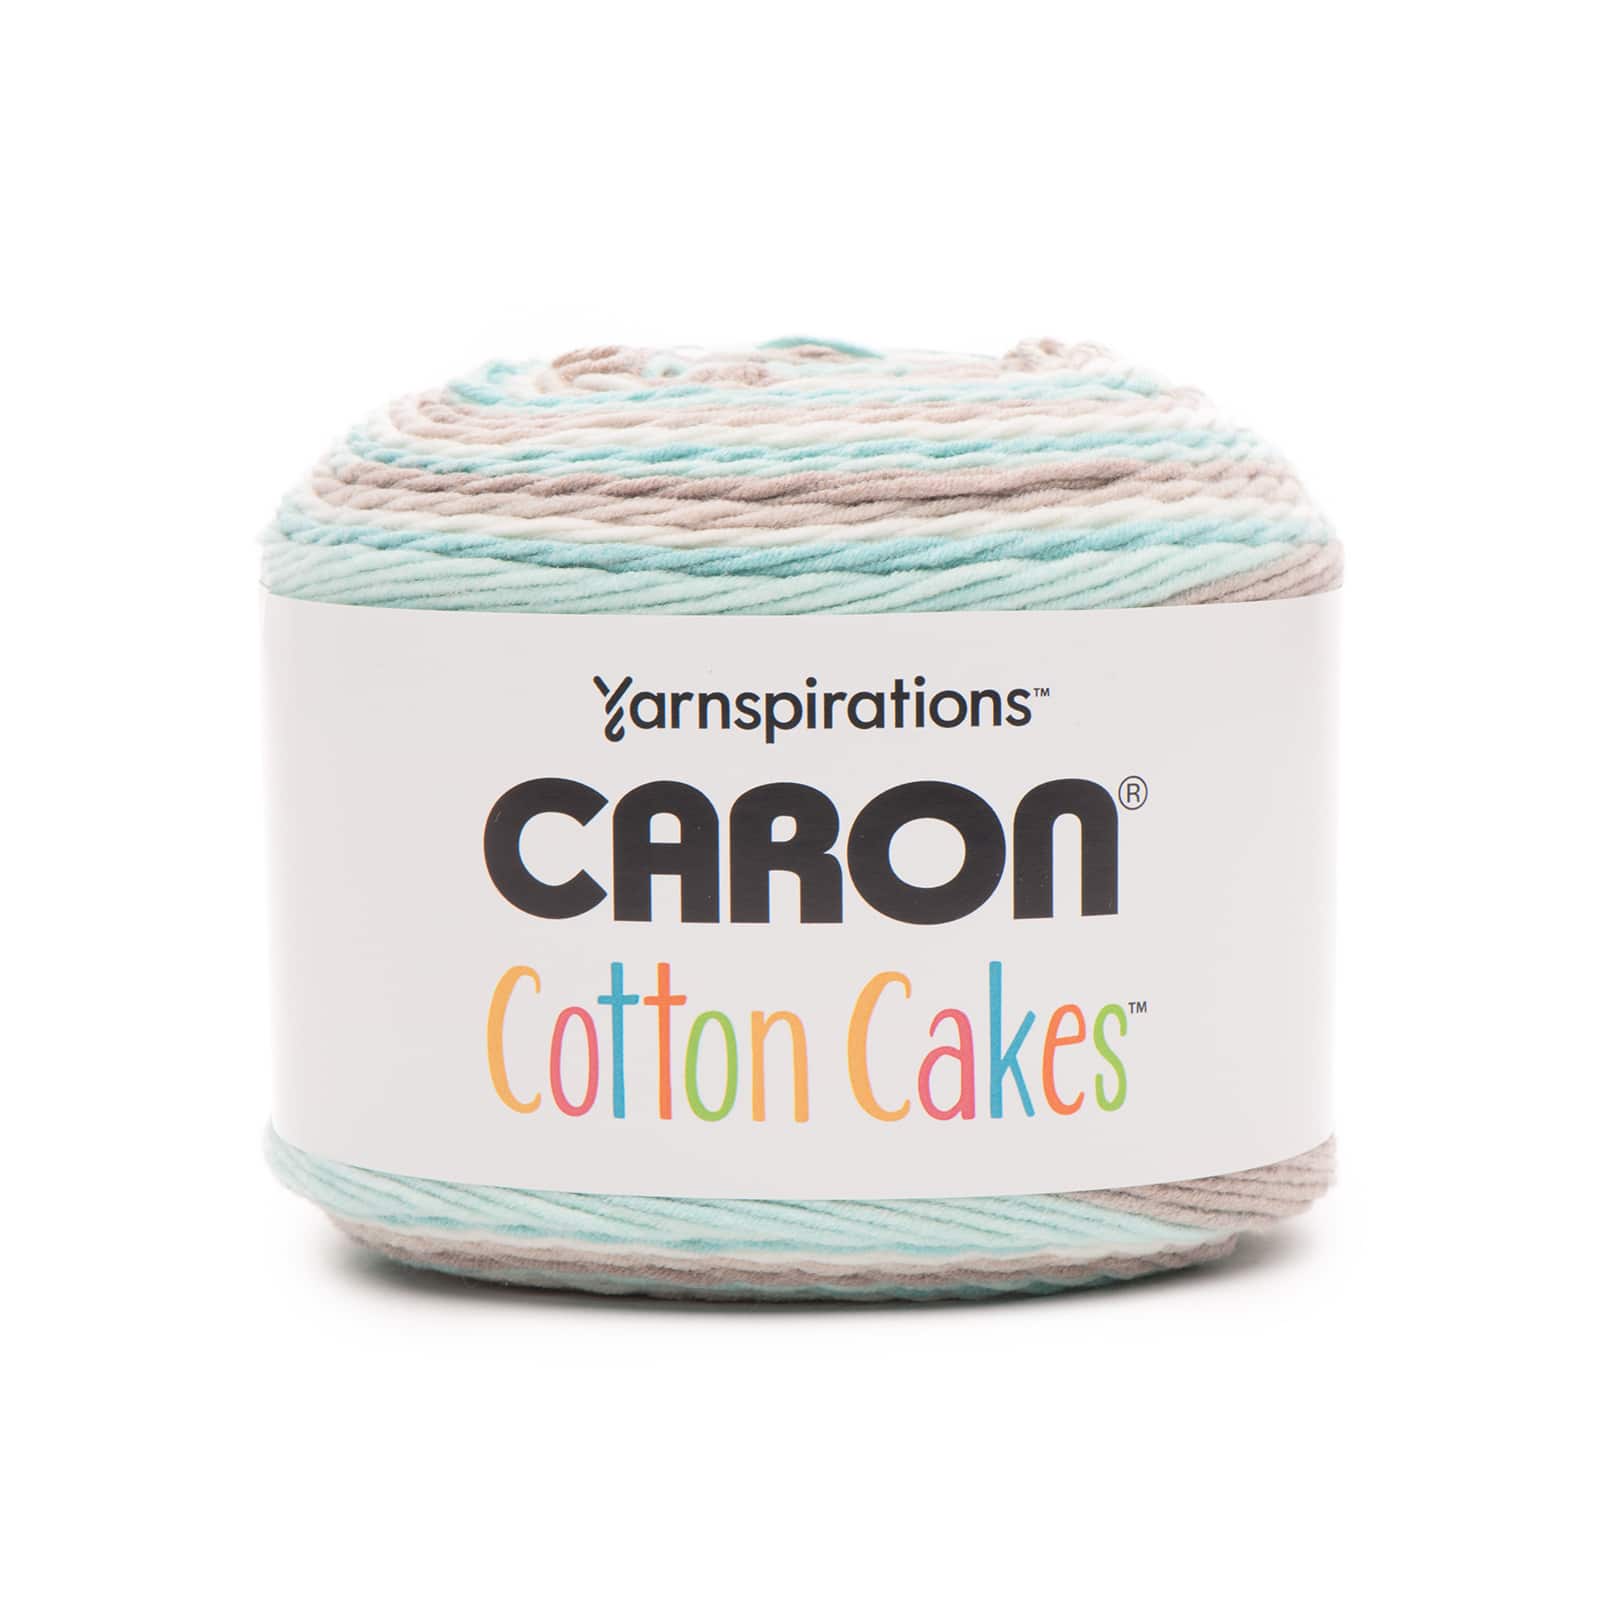 Caron® Cakes™ Yarn in Faerie Cake, 7.1